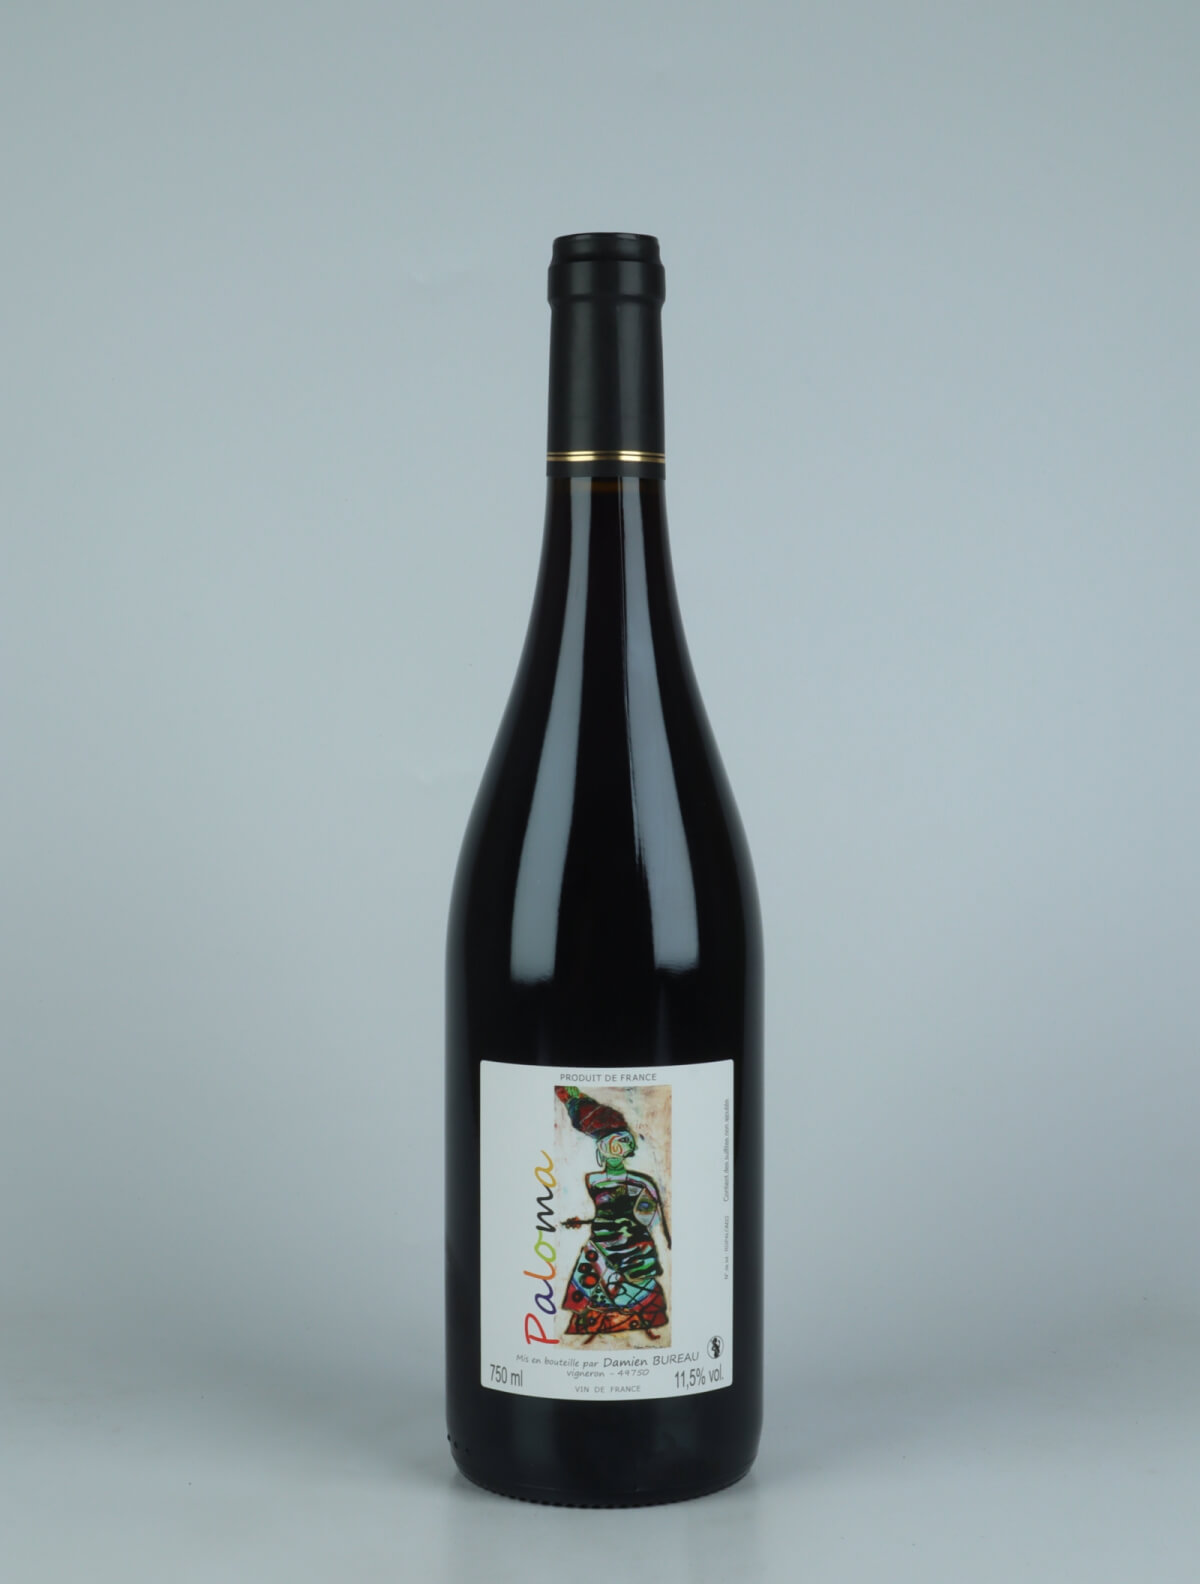 A bottle 2022 Paloma Red wine from Damien Bureau, Loire in France